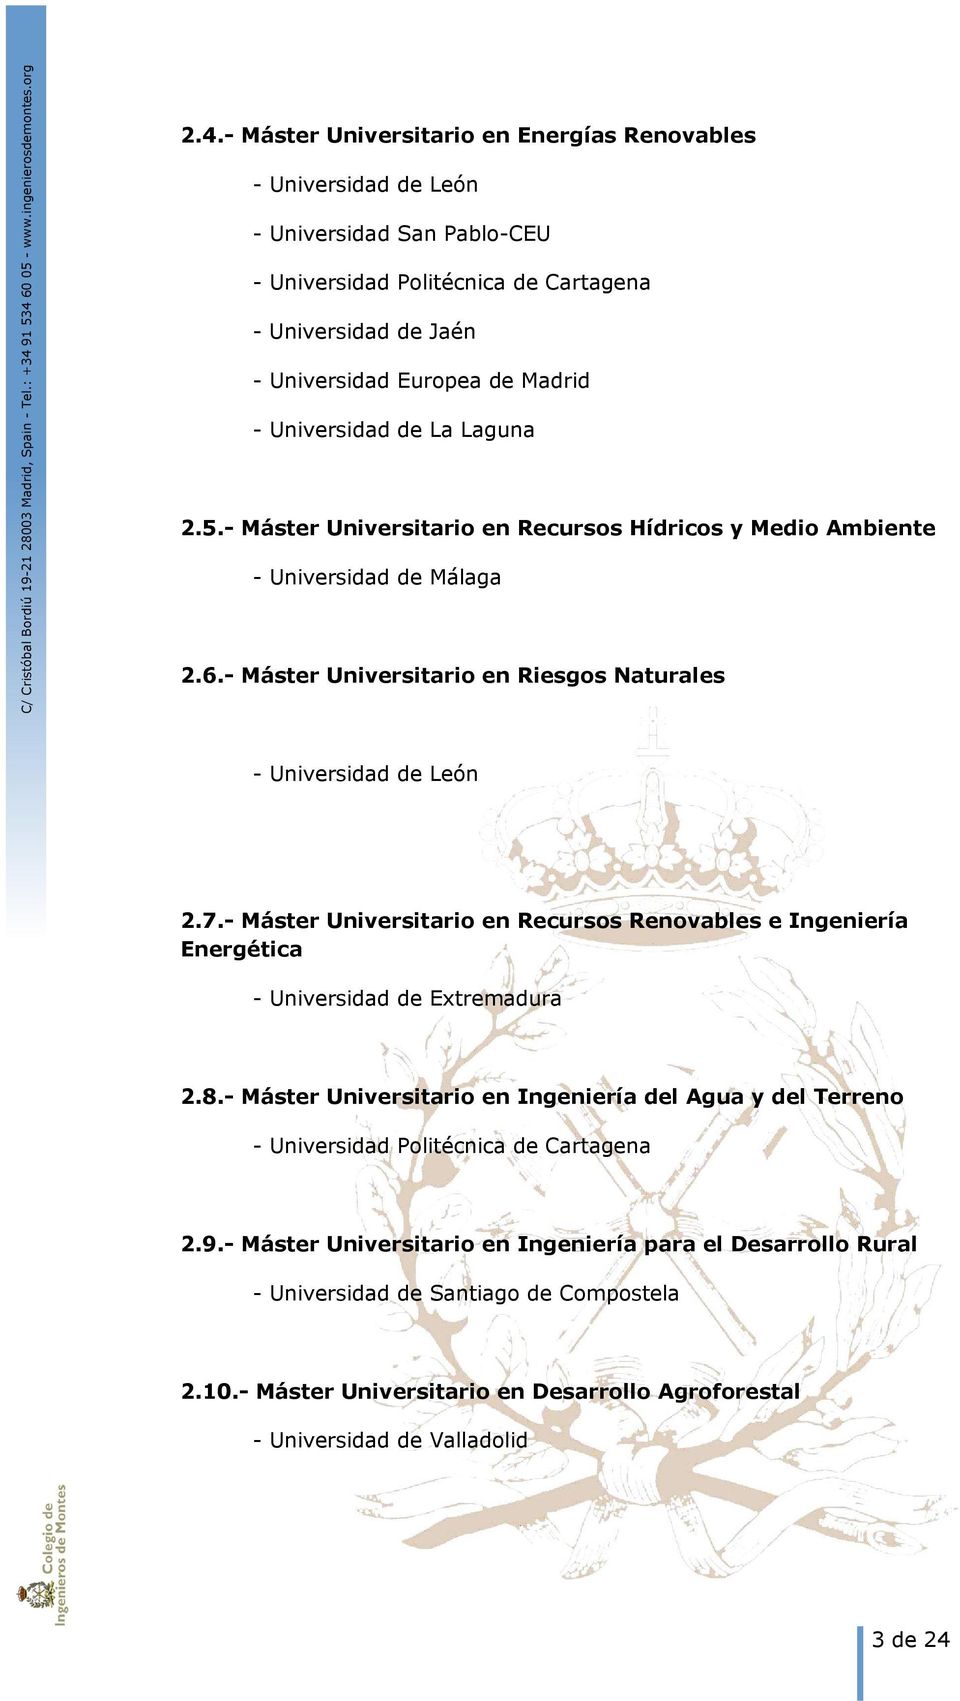 - Máster Universitario en Recursos Renovables e Ingeniería Energética - Universidad de Extremadura 2.8.